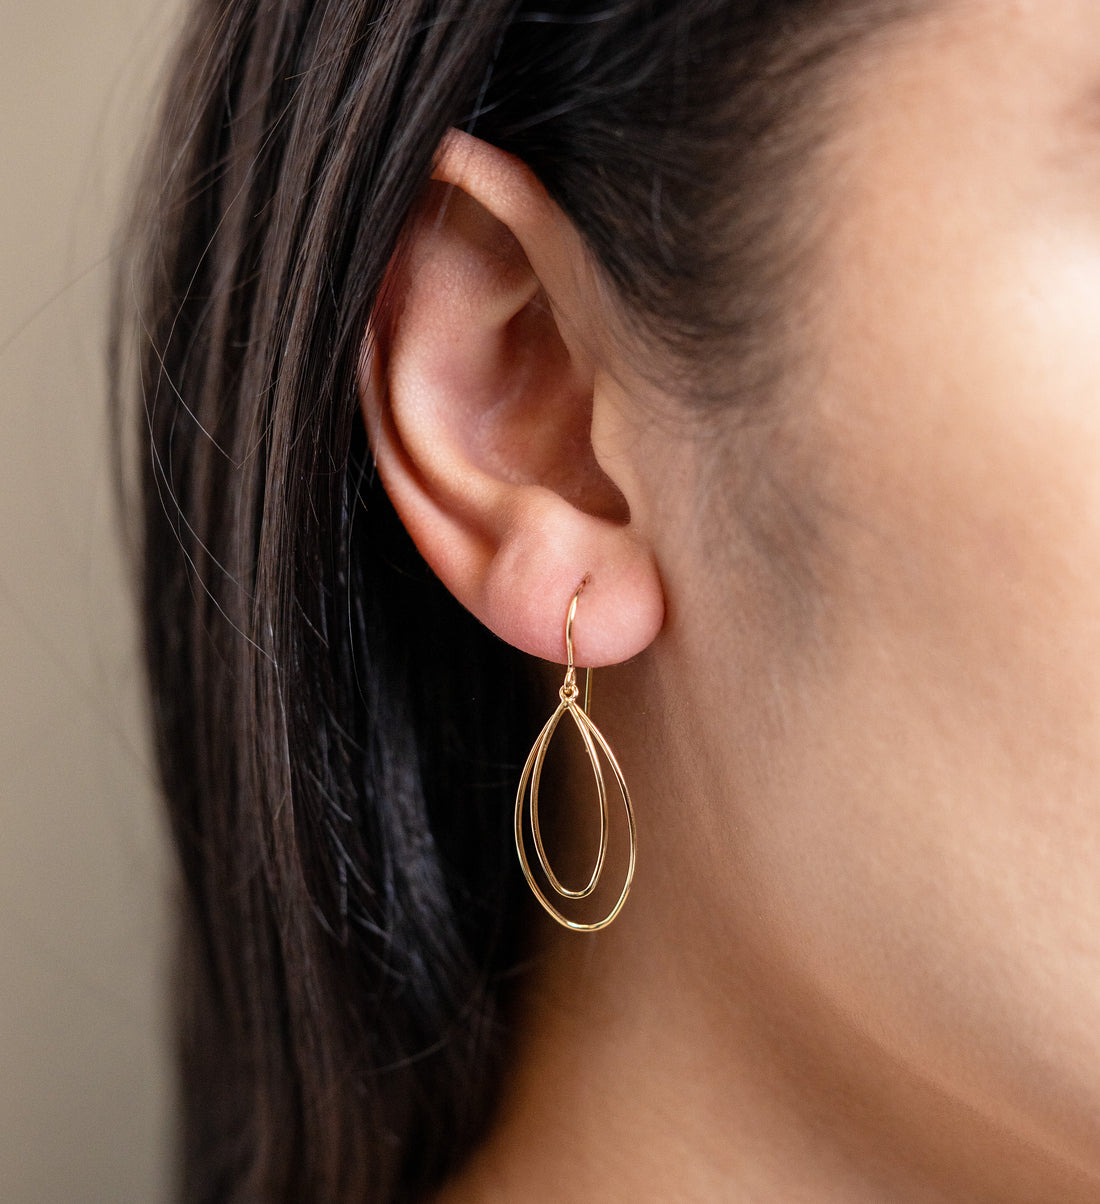 Yellow Gold Double Teardrop Dangle Earrings - Skeie's Jewelers